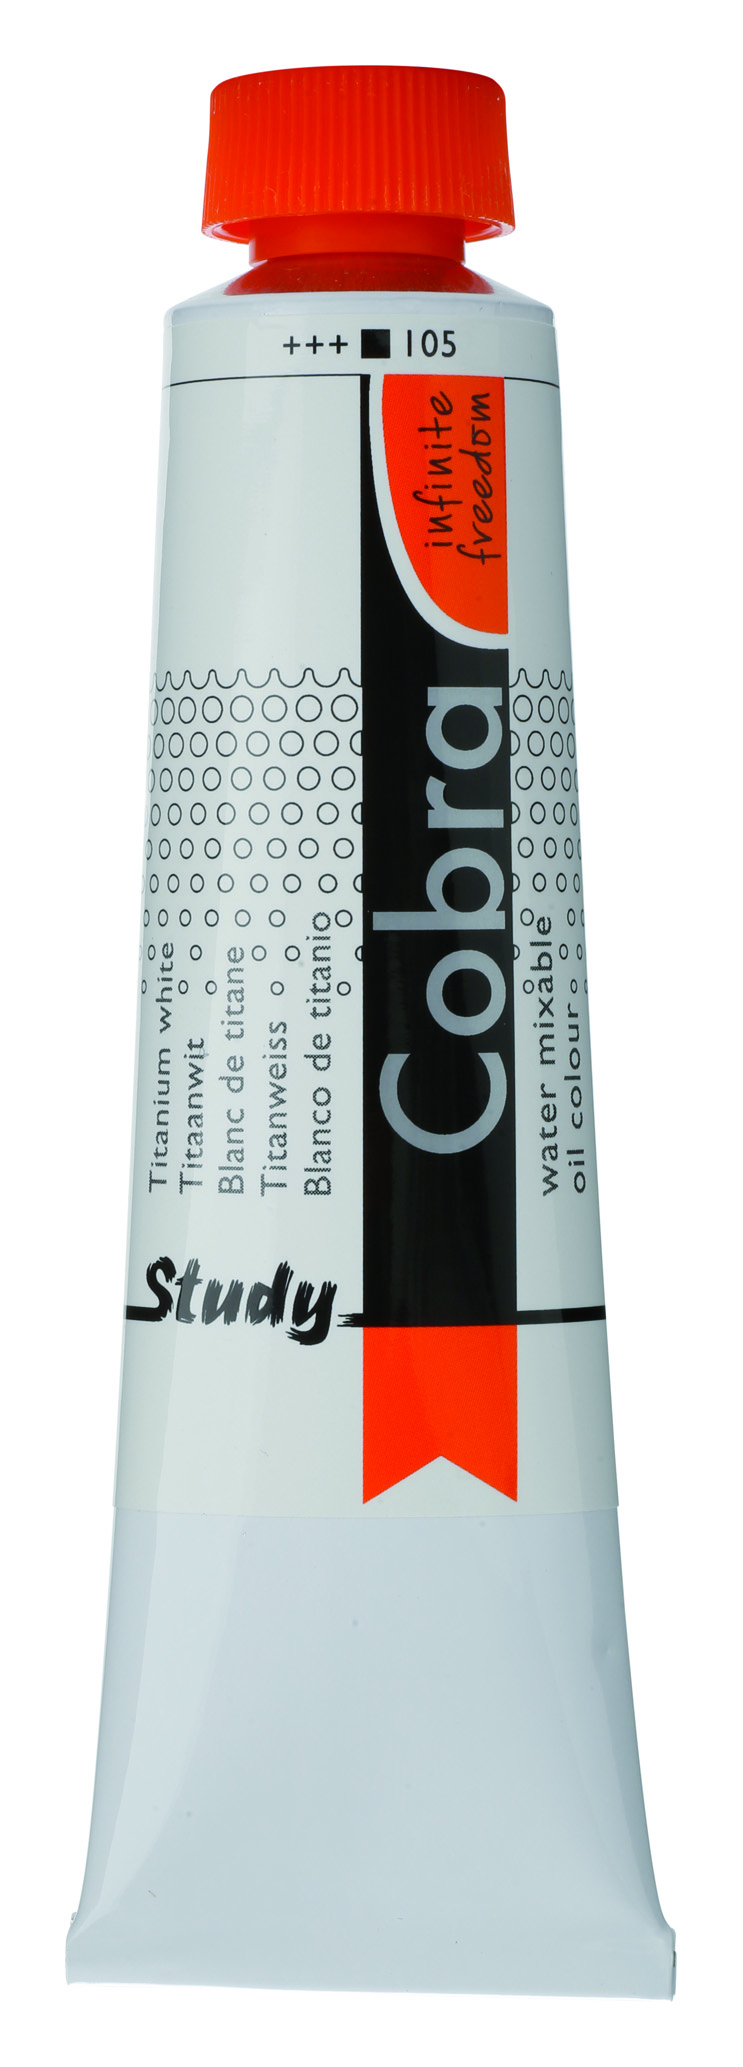 COBRA H2Oil STUDENT 40 ml, 339 - light oxide red